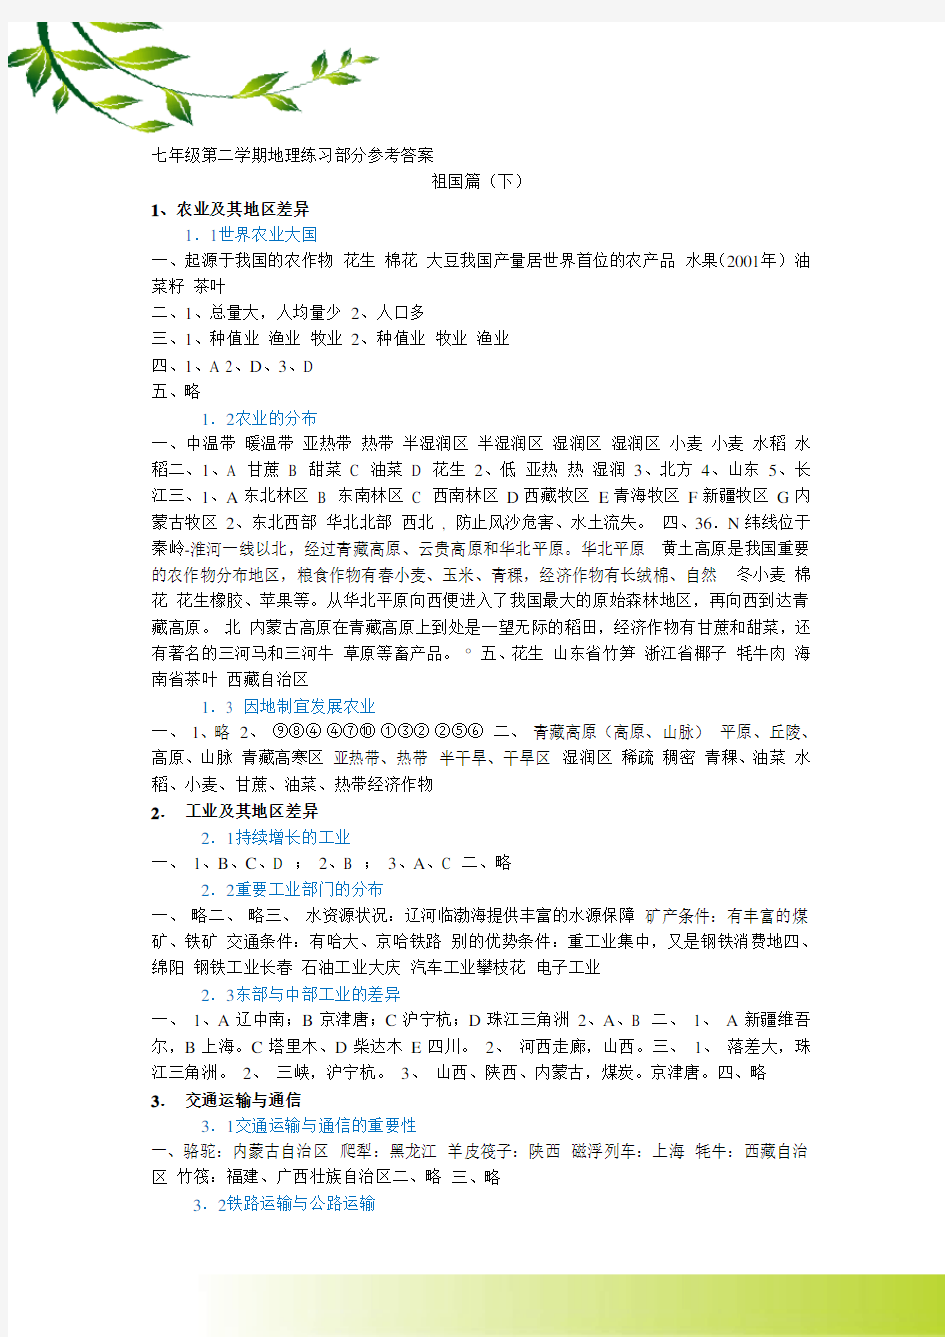 上海七年级第二学期地理练习册答案